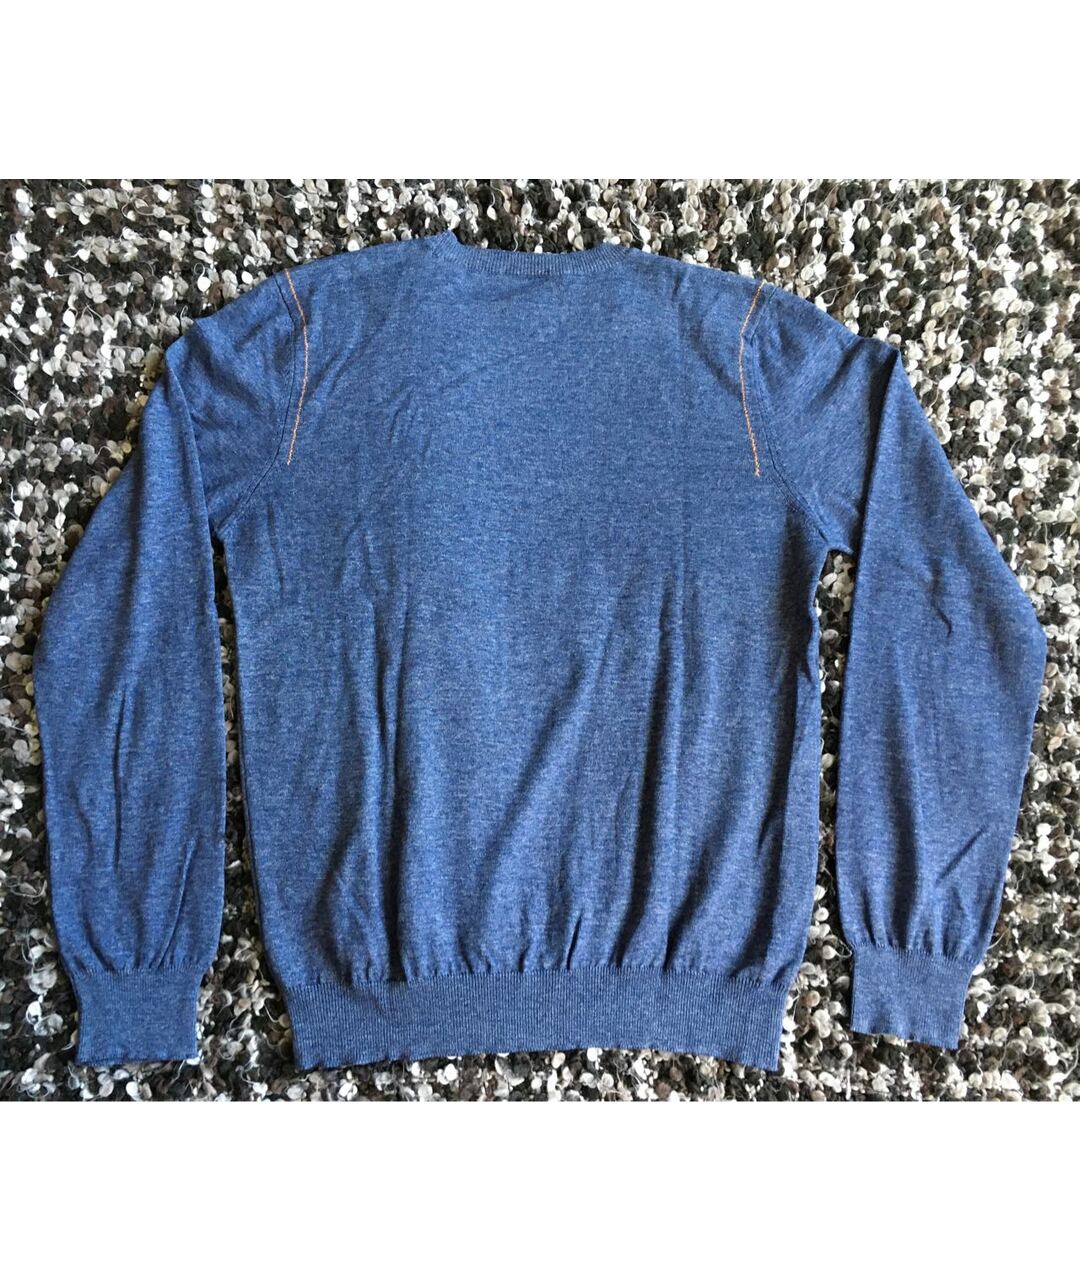 PAL ZILERI Синий хлопковый джемпер / свитер, фото 4